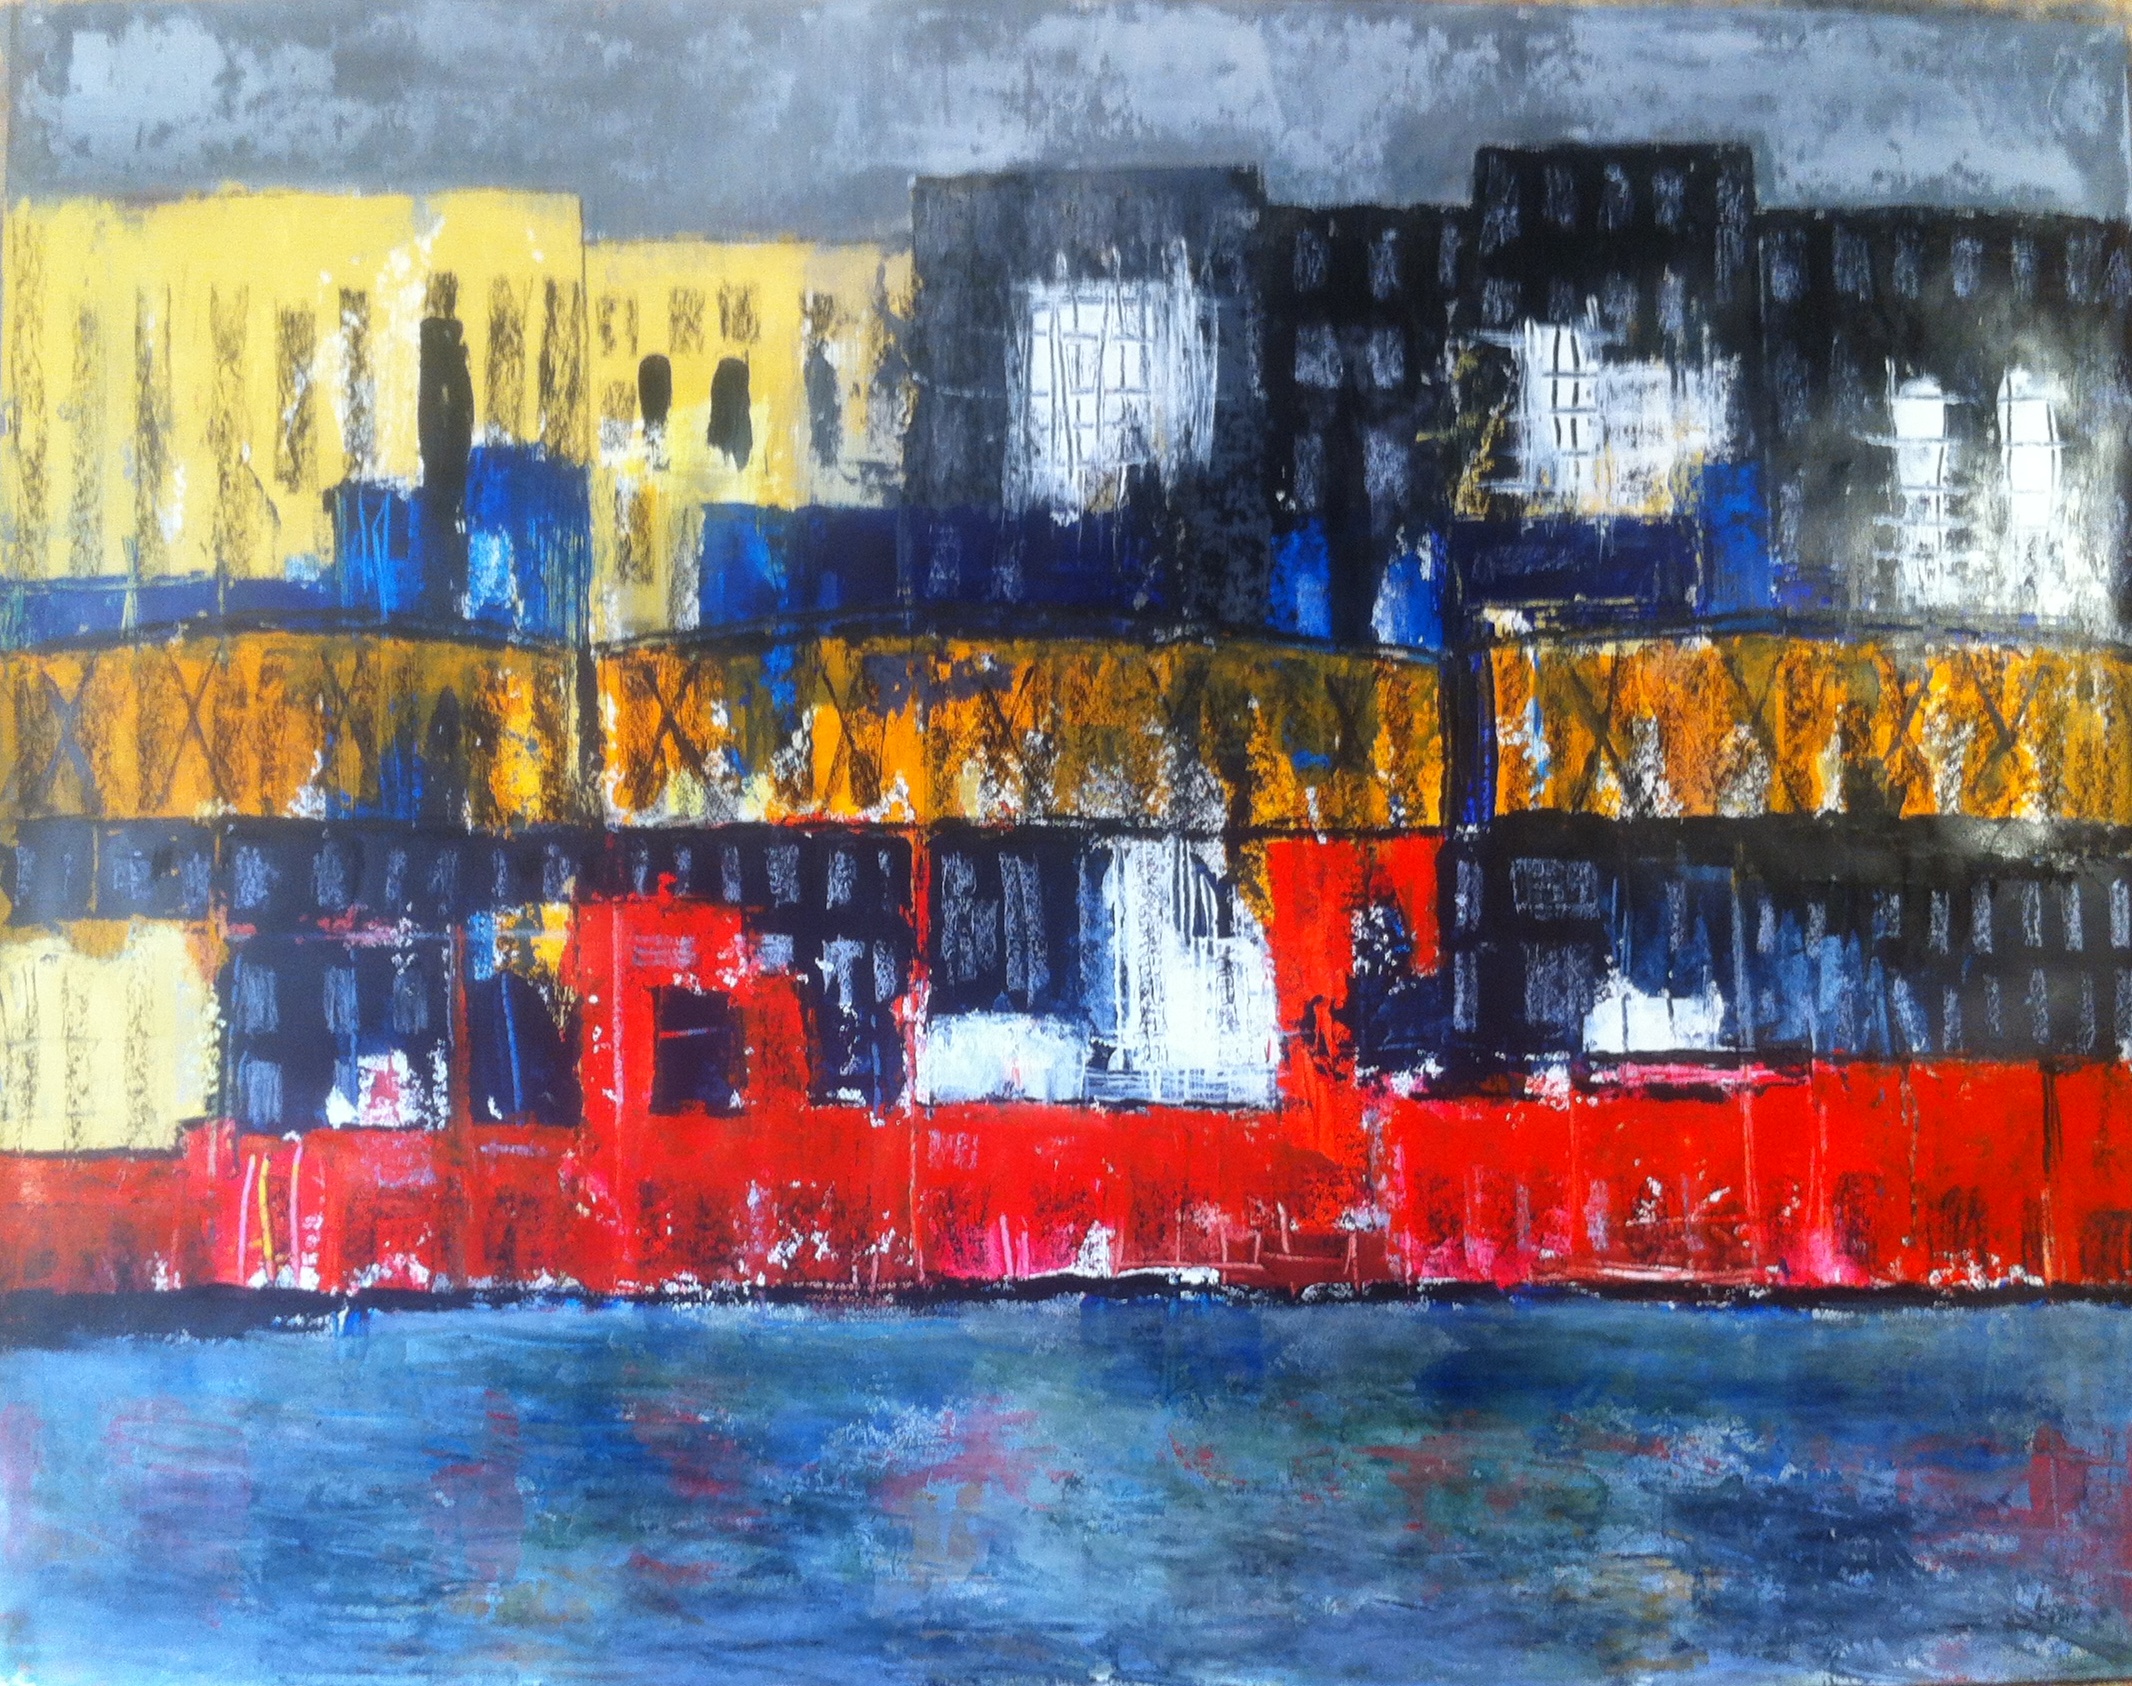 N°1519 - Paysage urbain avec barge et métro aérien- Acrylique et pastel sur papier - 100 x 130 cm - 23 septembre 2014